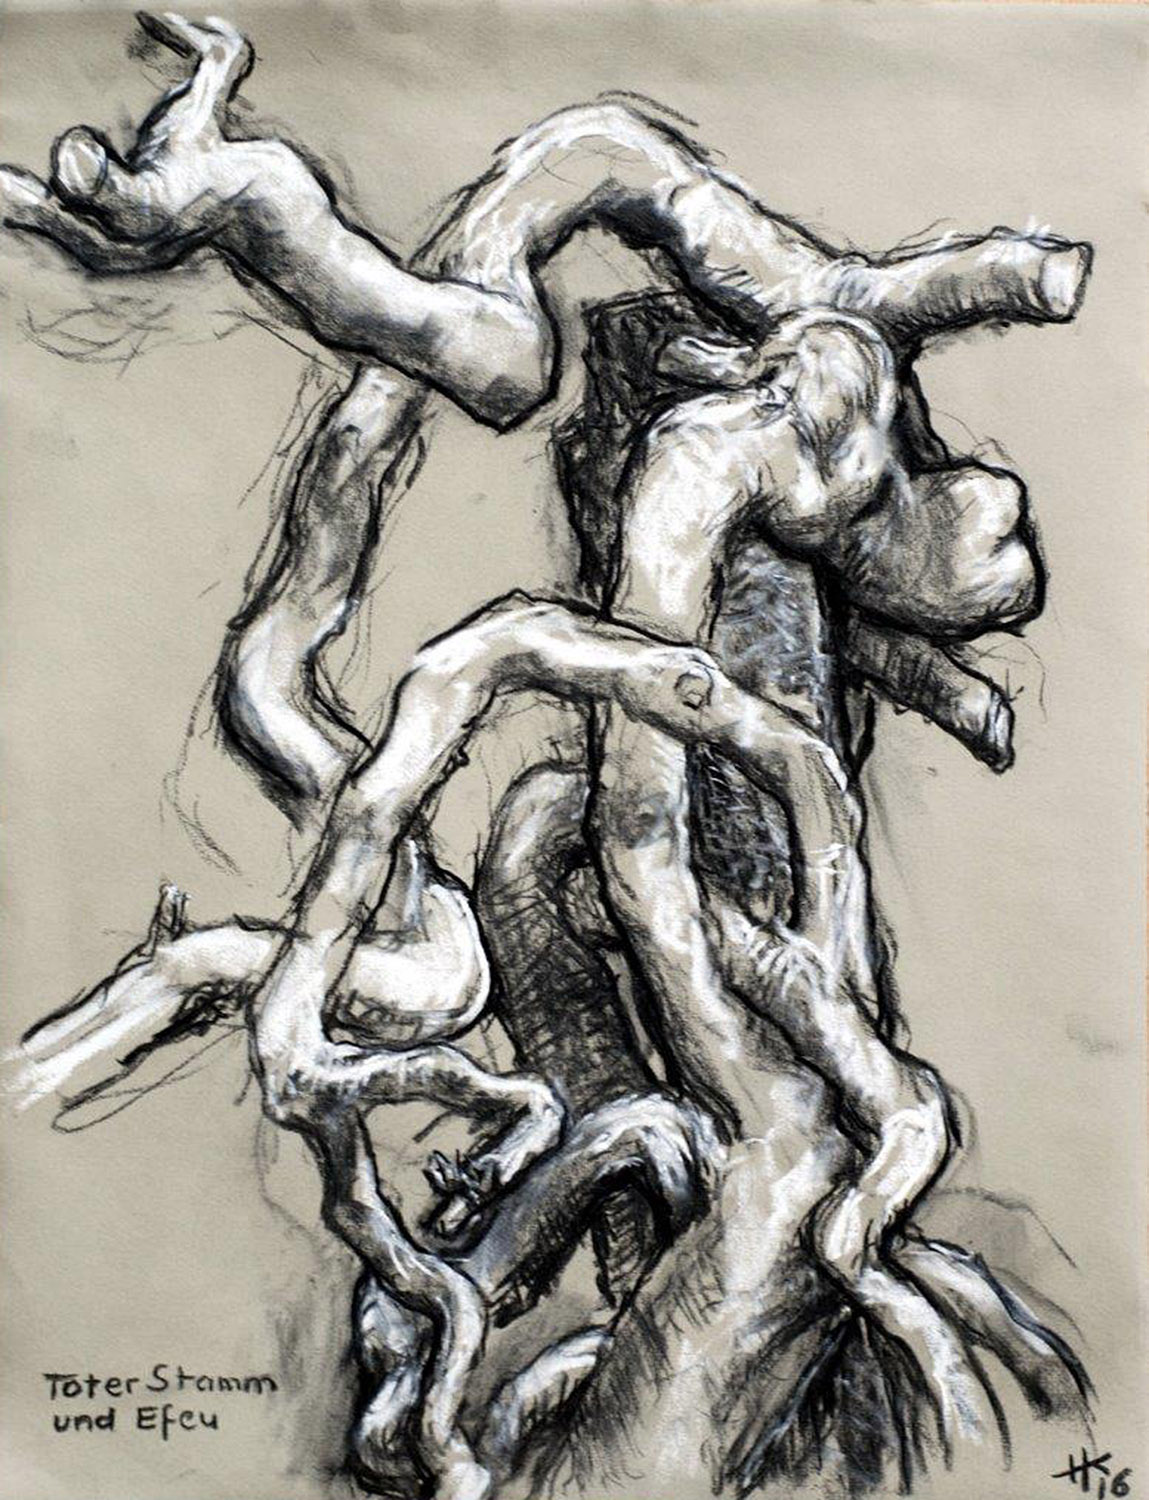 „Toter Baumstamm u. Efeu“, Kohle und Kreide auf Grau, 2016, 48,7 x 63,5 cm